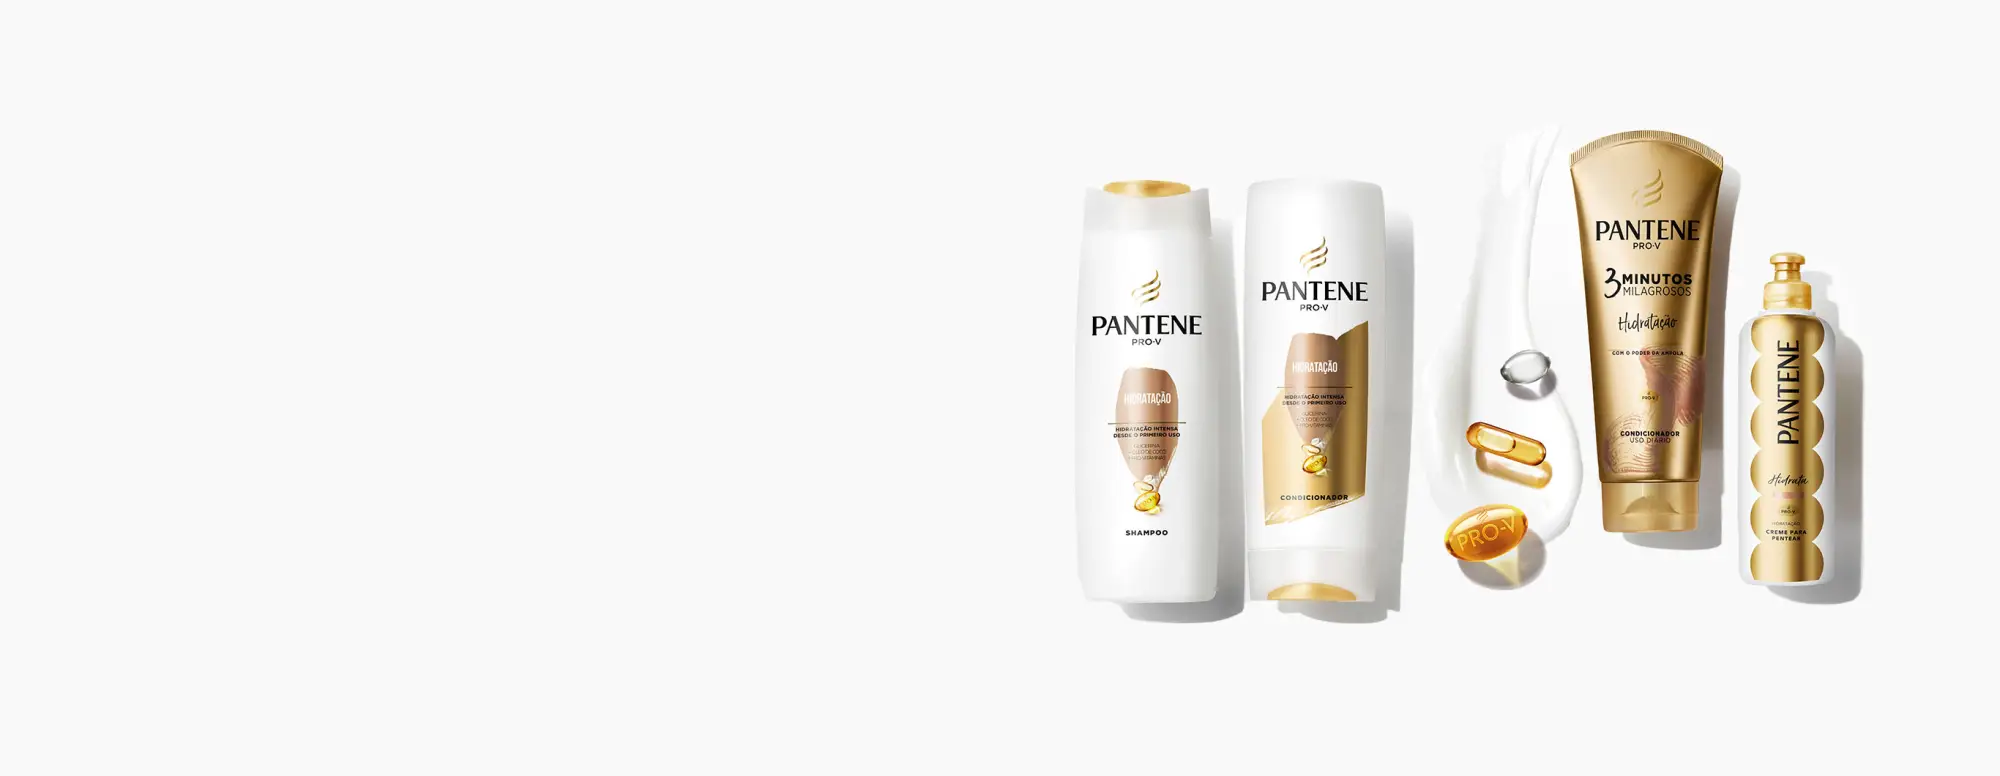 Pantene Pro V Coleção de
hidratação com shampoo, condicionador e creme para pentear